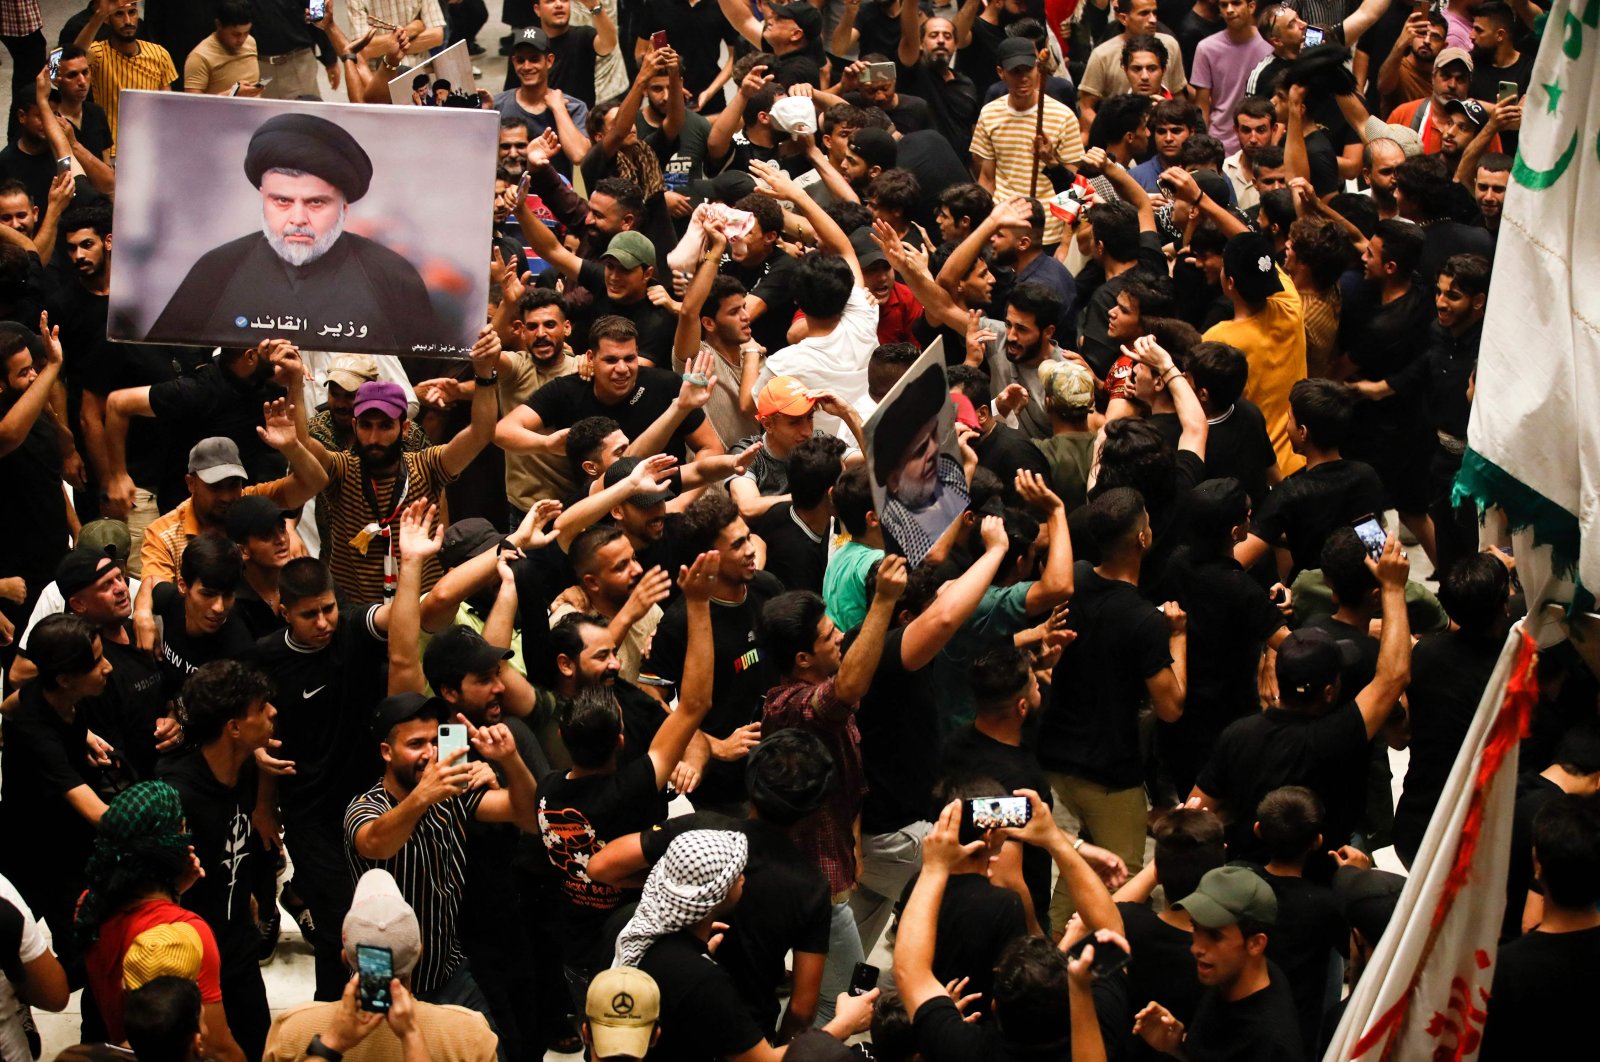 Ulama Irak Sadr mendesak pembubaran parlemen, pemungutan suara lebih awal